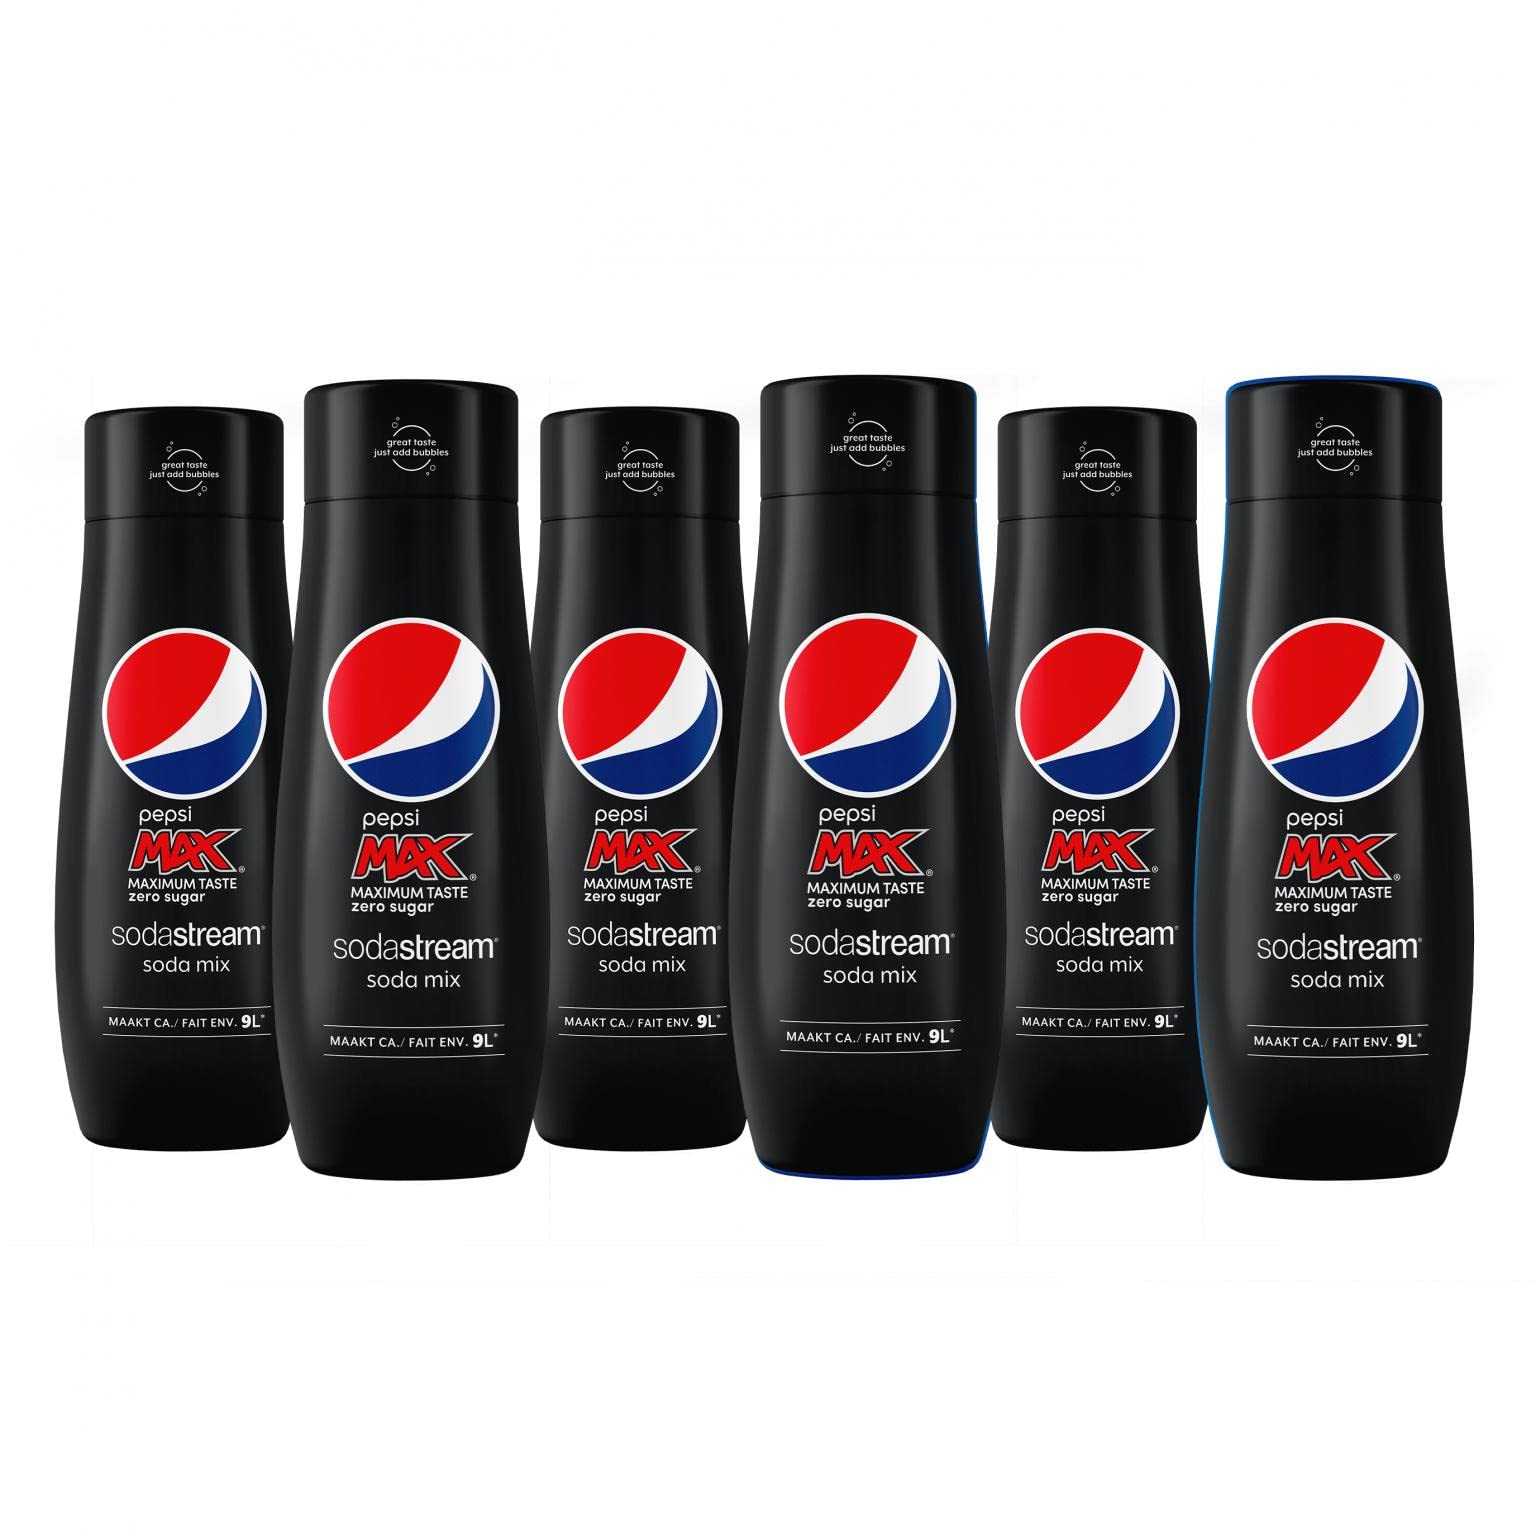 SodaStream Sirup Pepsi Max - 1x Flasche ergibt 9 Liter Fertiggetränk, Sekundenschnell zubereitet und immer frisch, Cola free 440 ml, 6er Pack (6 x 440 ml)